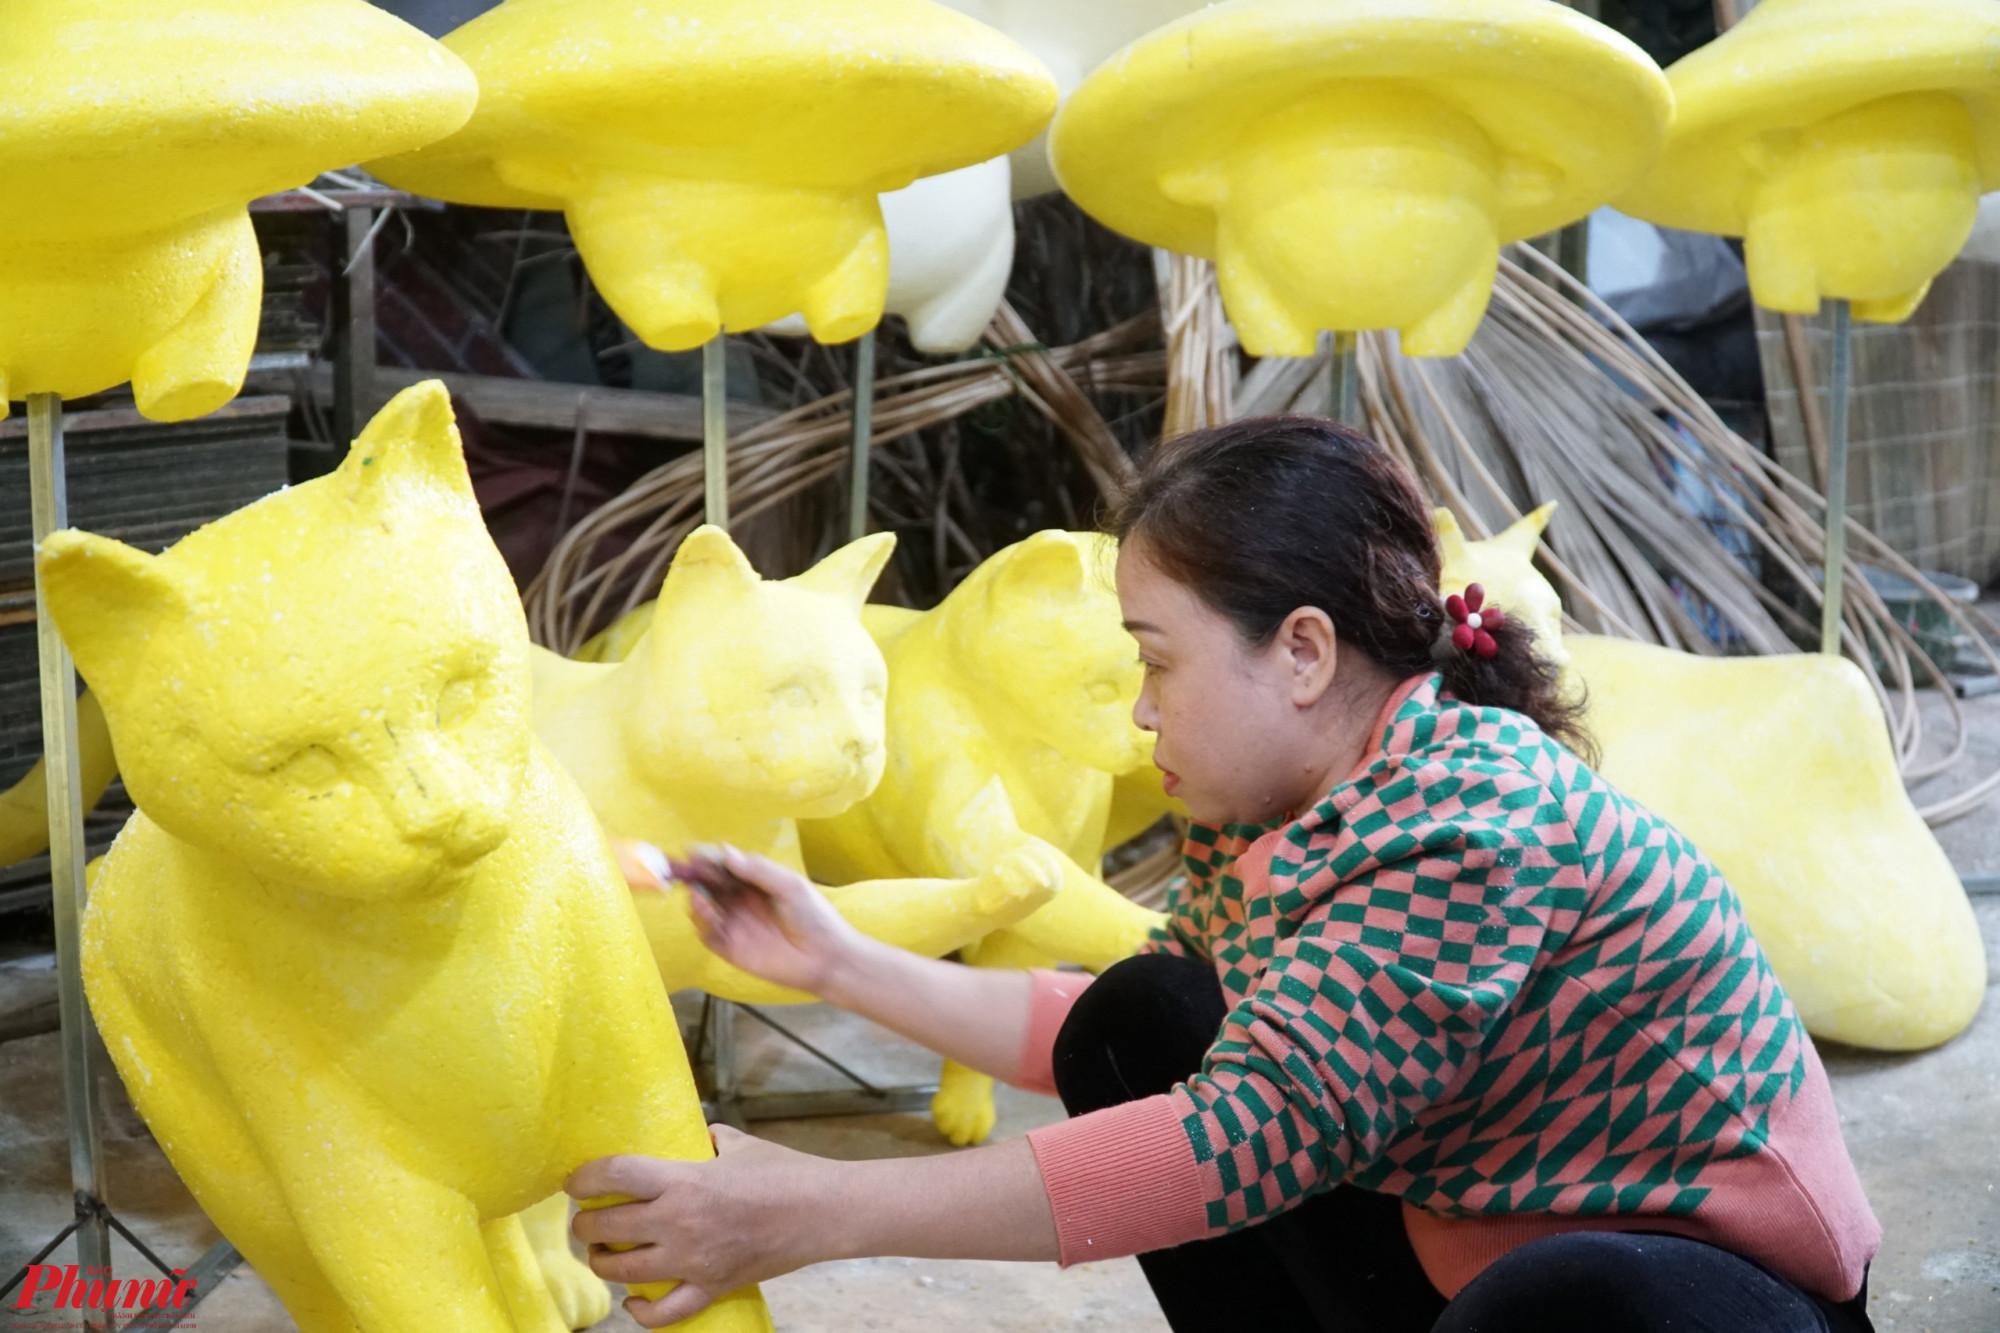 Chị Nguyễn Thị Kim Thuý làm việc tại xưởng đã 12 năm cho biết: Đảm nhận vai trò phủ màu cho các linh vật, nữ hoạ sĩ cho biết công việc của chị khá quan trọng bởi nếu lên sai màu so với bản vẽ, linh vật sẽ không có sự sinh động, hài hoà trong cảnh quan chung